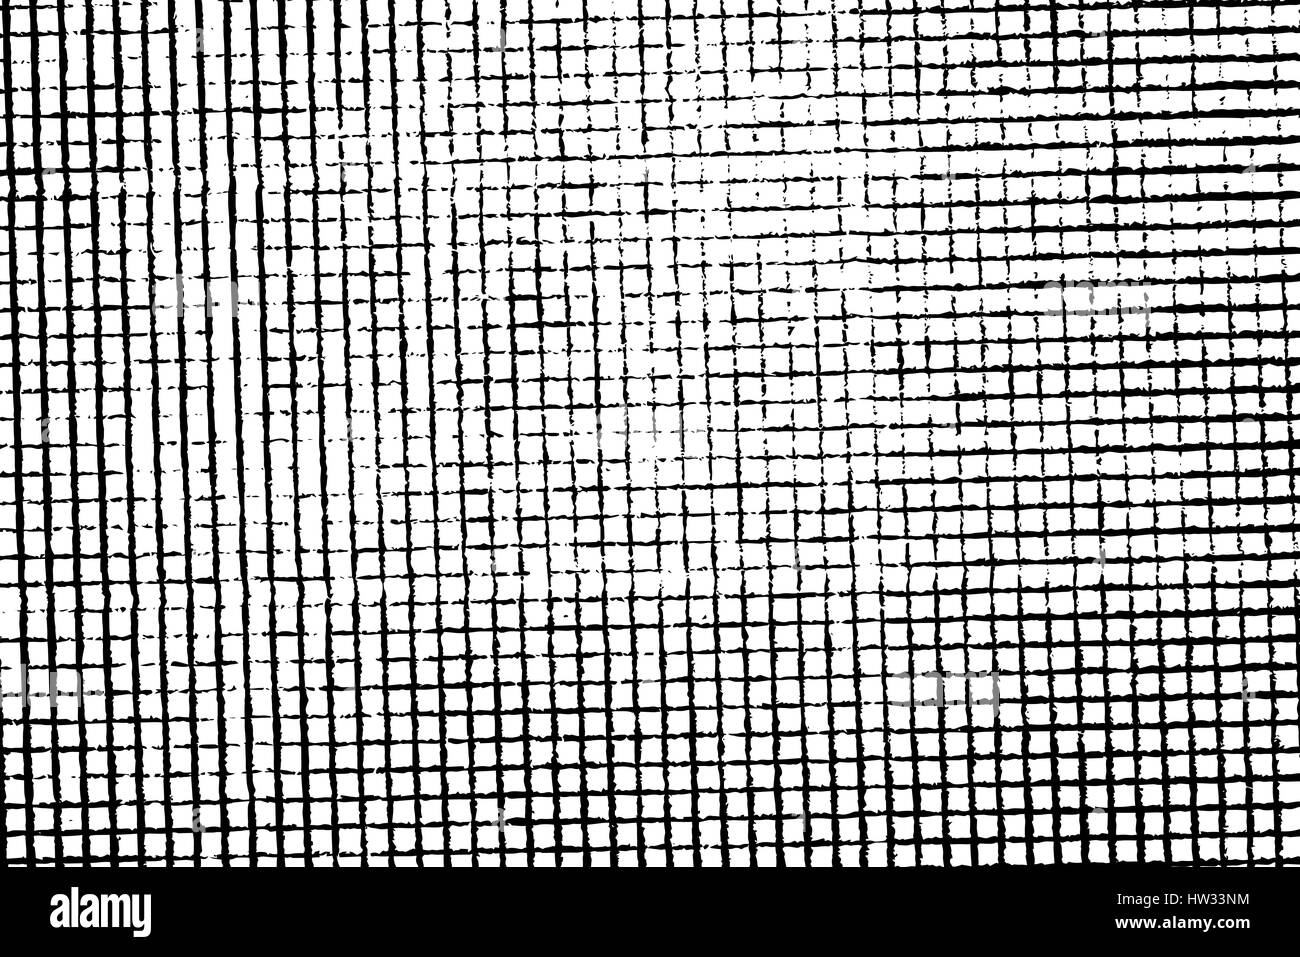 Texture grunge isolé du matériel géométrique en noir et blanc, vintage background ressource. Vecteur EPS10. Illustration de Vecteur